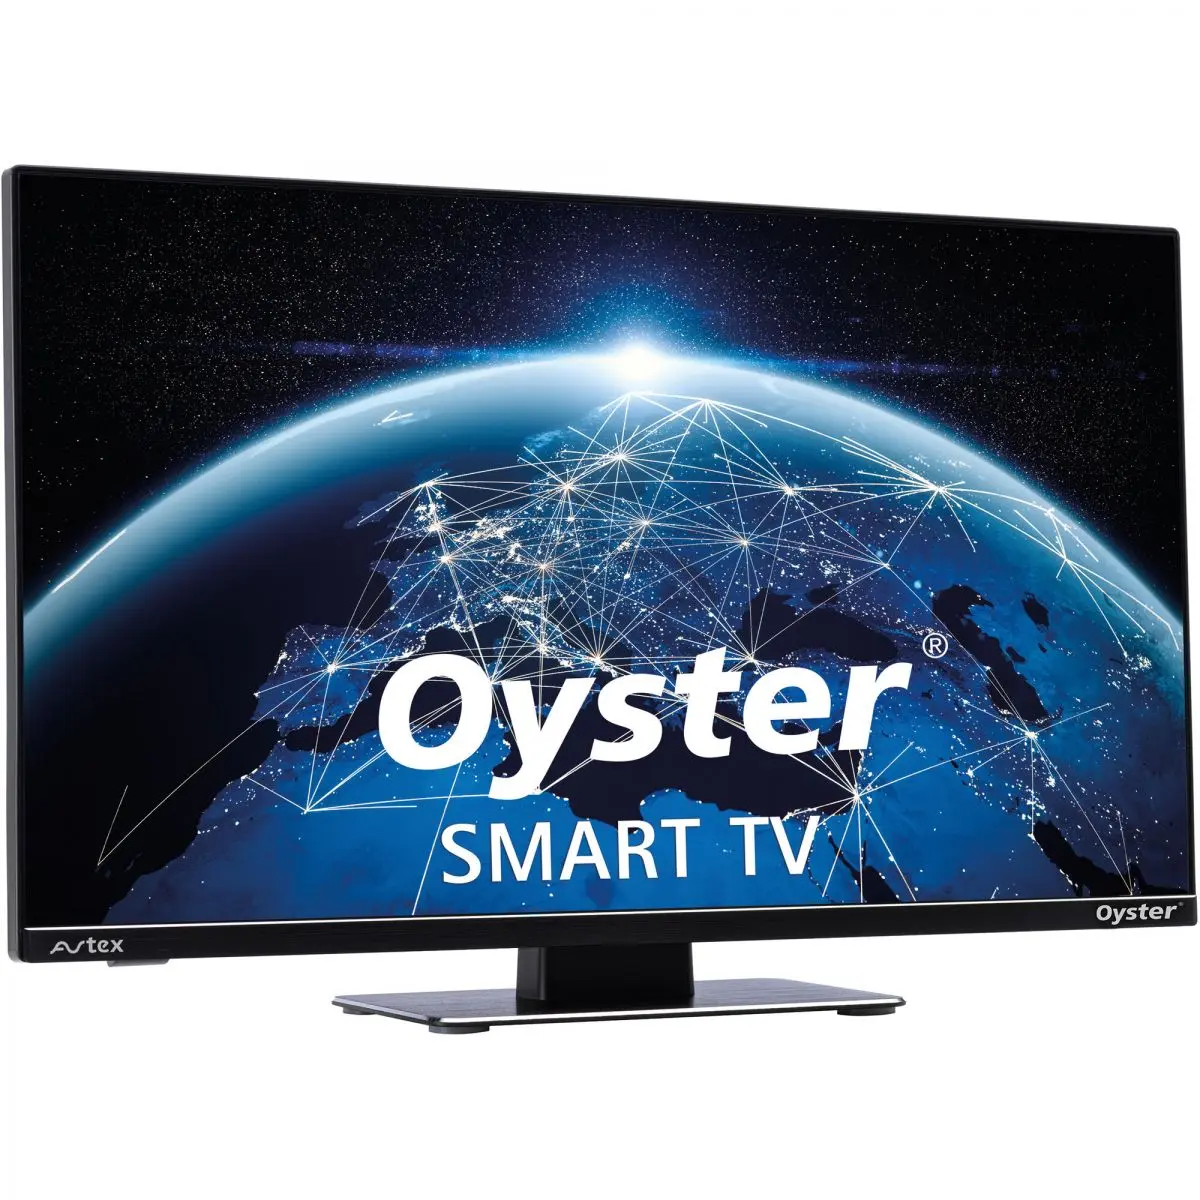 Oyster Smart TV 24, 12 V